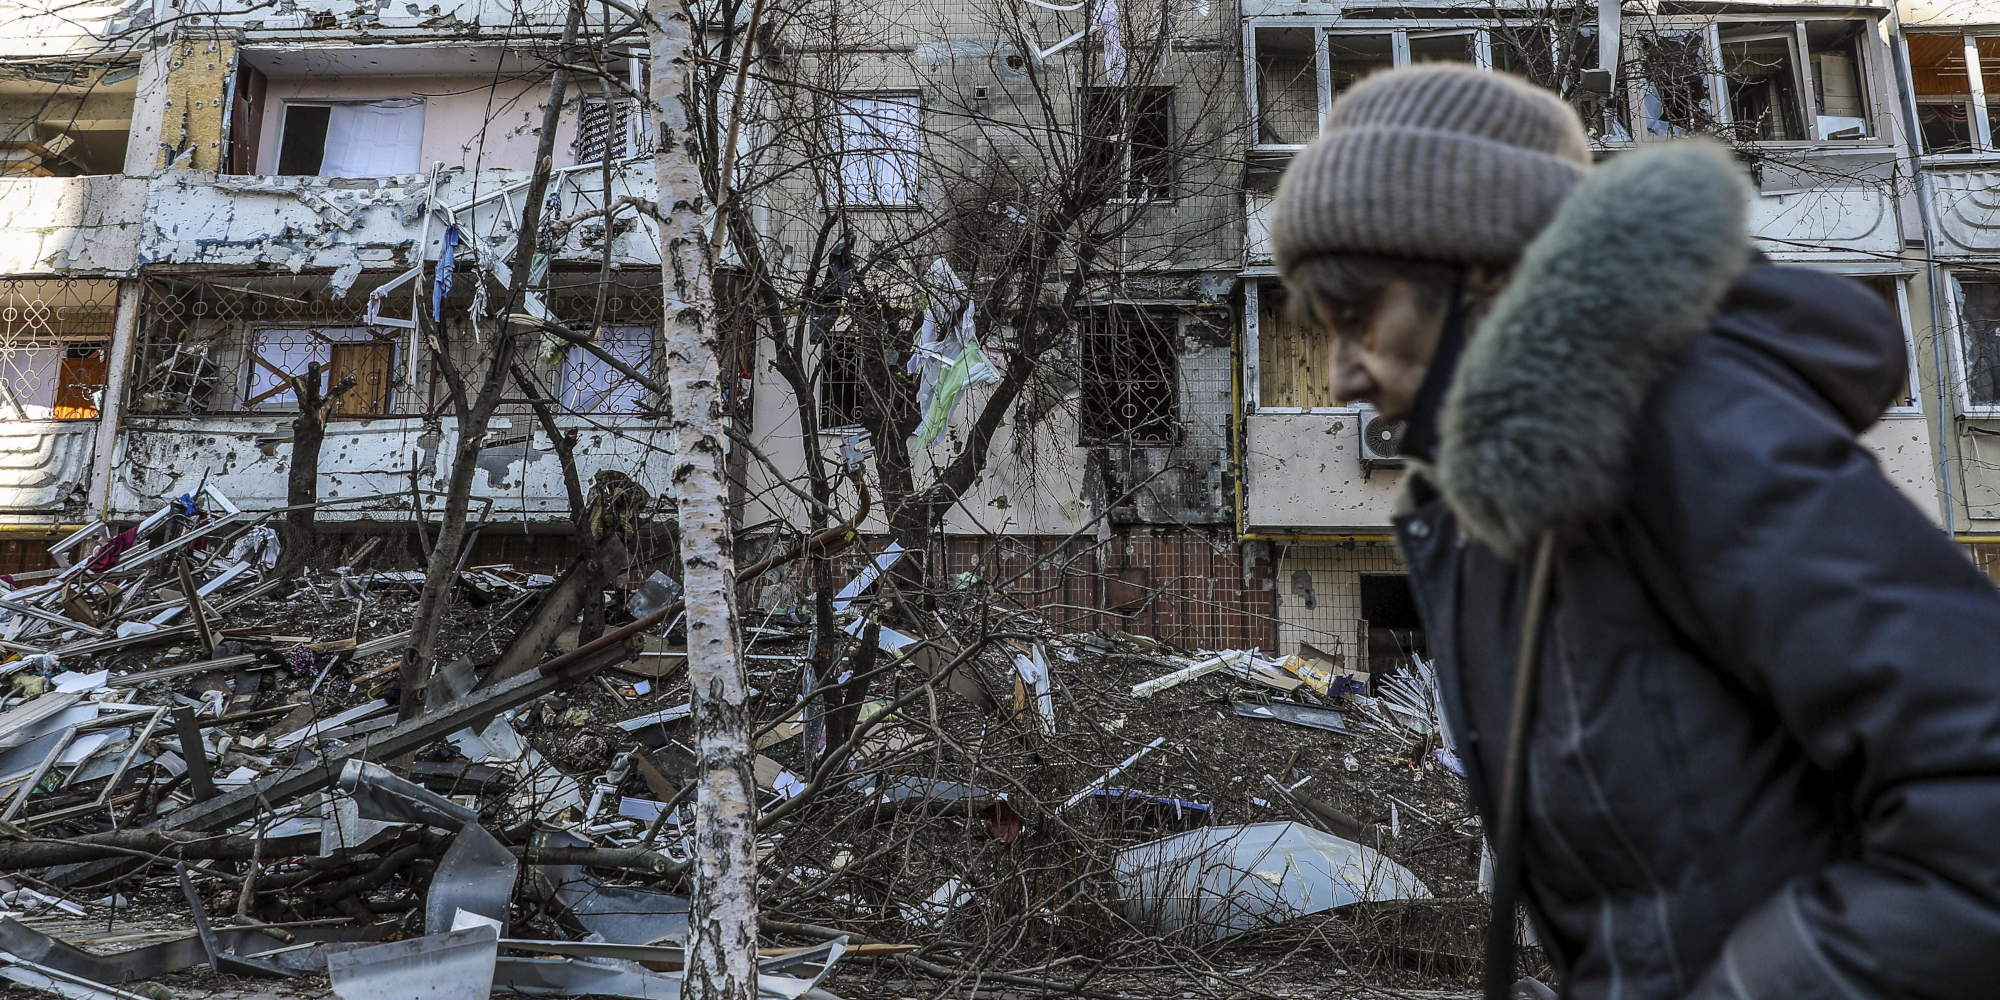 Βομβαρδισμένο κτίριο στην Ουκρανία